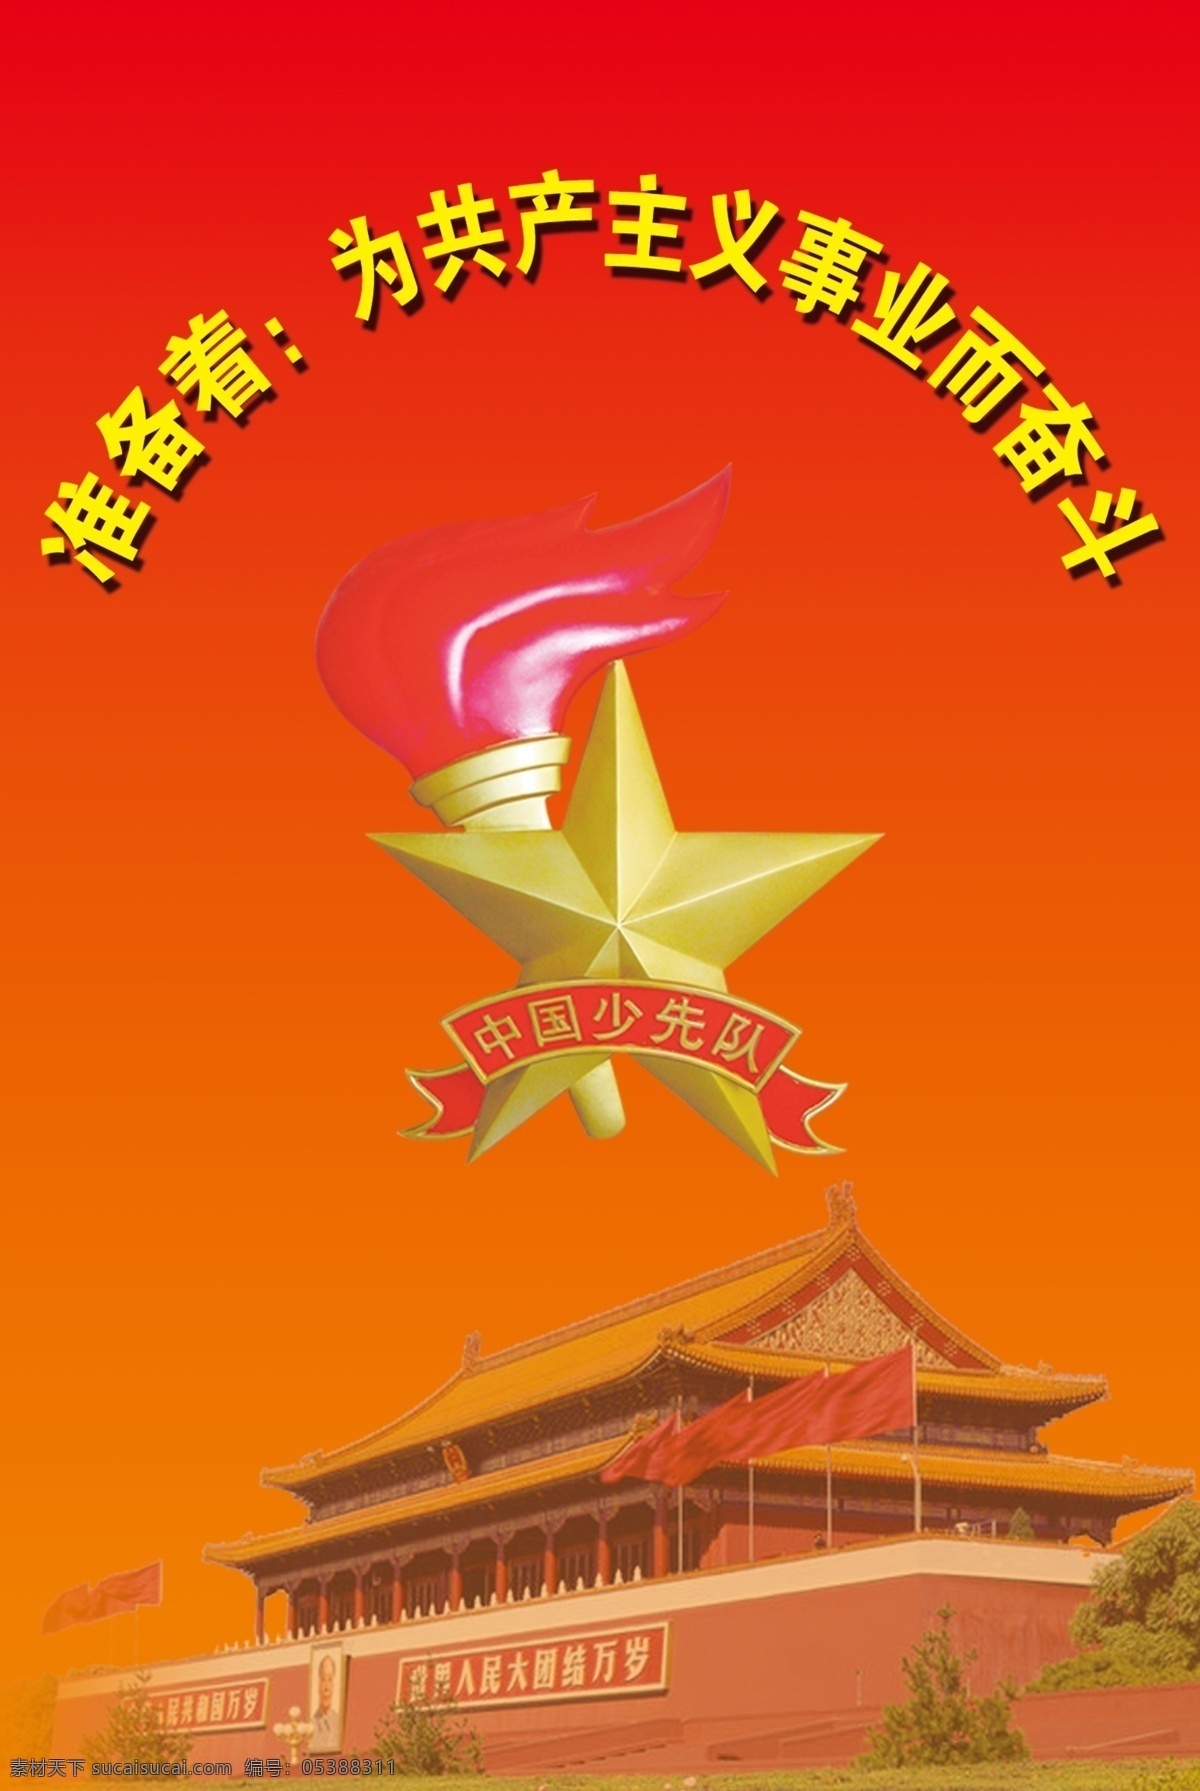 中国少年先锋队 誓言 队 徽 天安门 广告设计模板 展板模板 源文件库